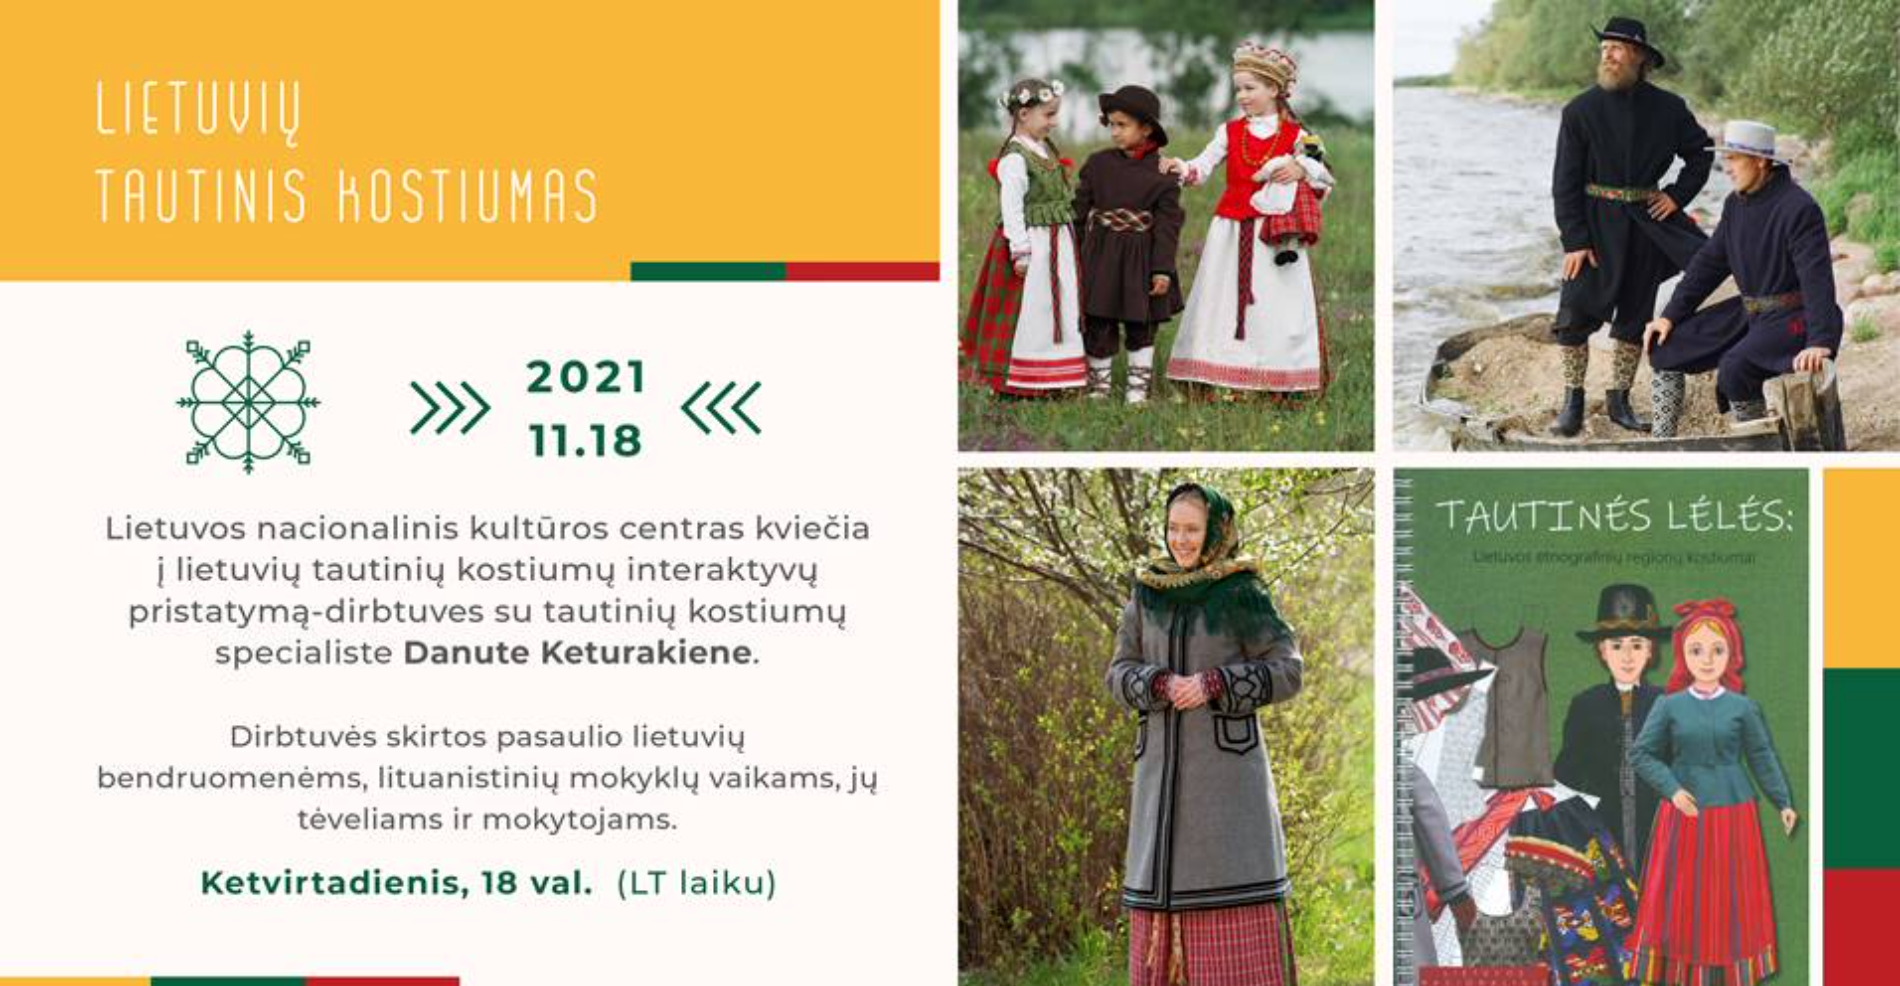 complexity Senator front Lietuvos nacionalinis kultūros centras kviečia į interaktyvų lietuvių  tautinių kostiumų pristatymą - Vakarų Vėjai